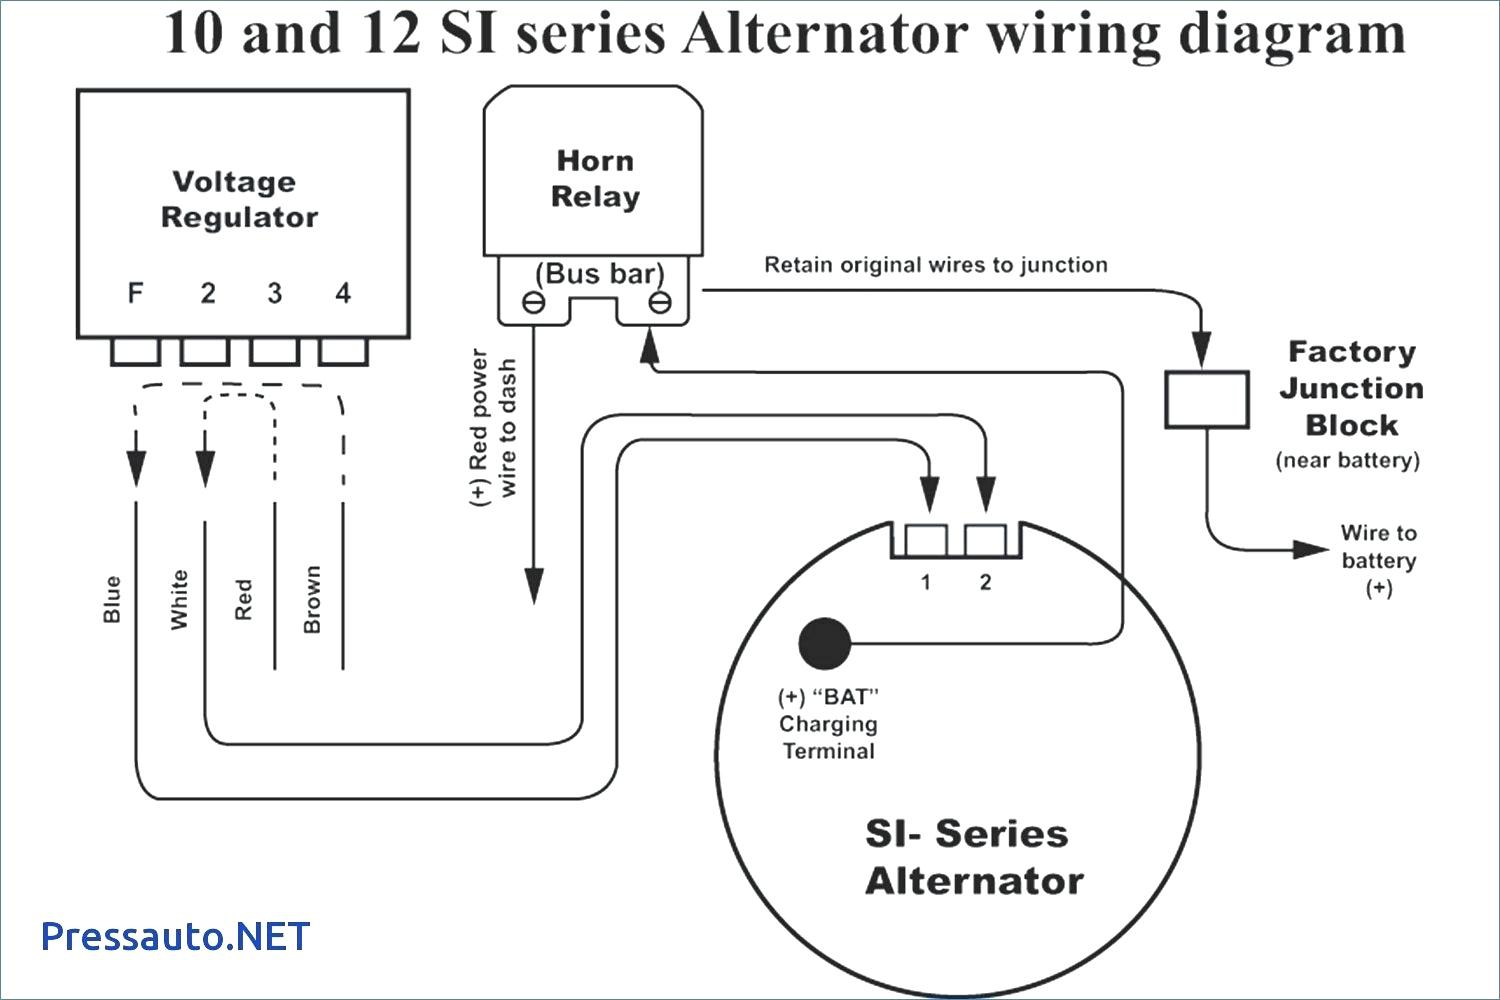 Gm Alt Wire Diagram | Wiring Diagram - Gm 4 Wire Alternator Wiring Diagram